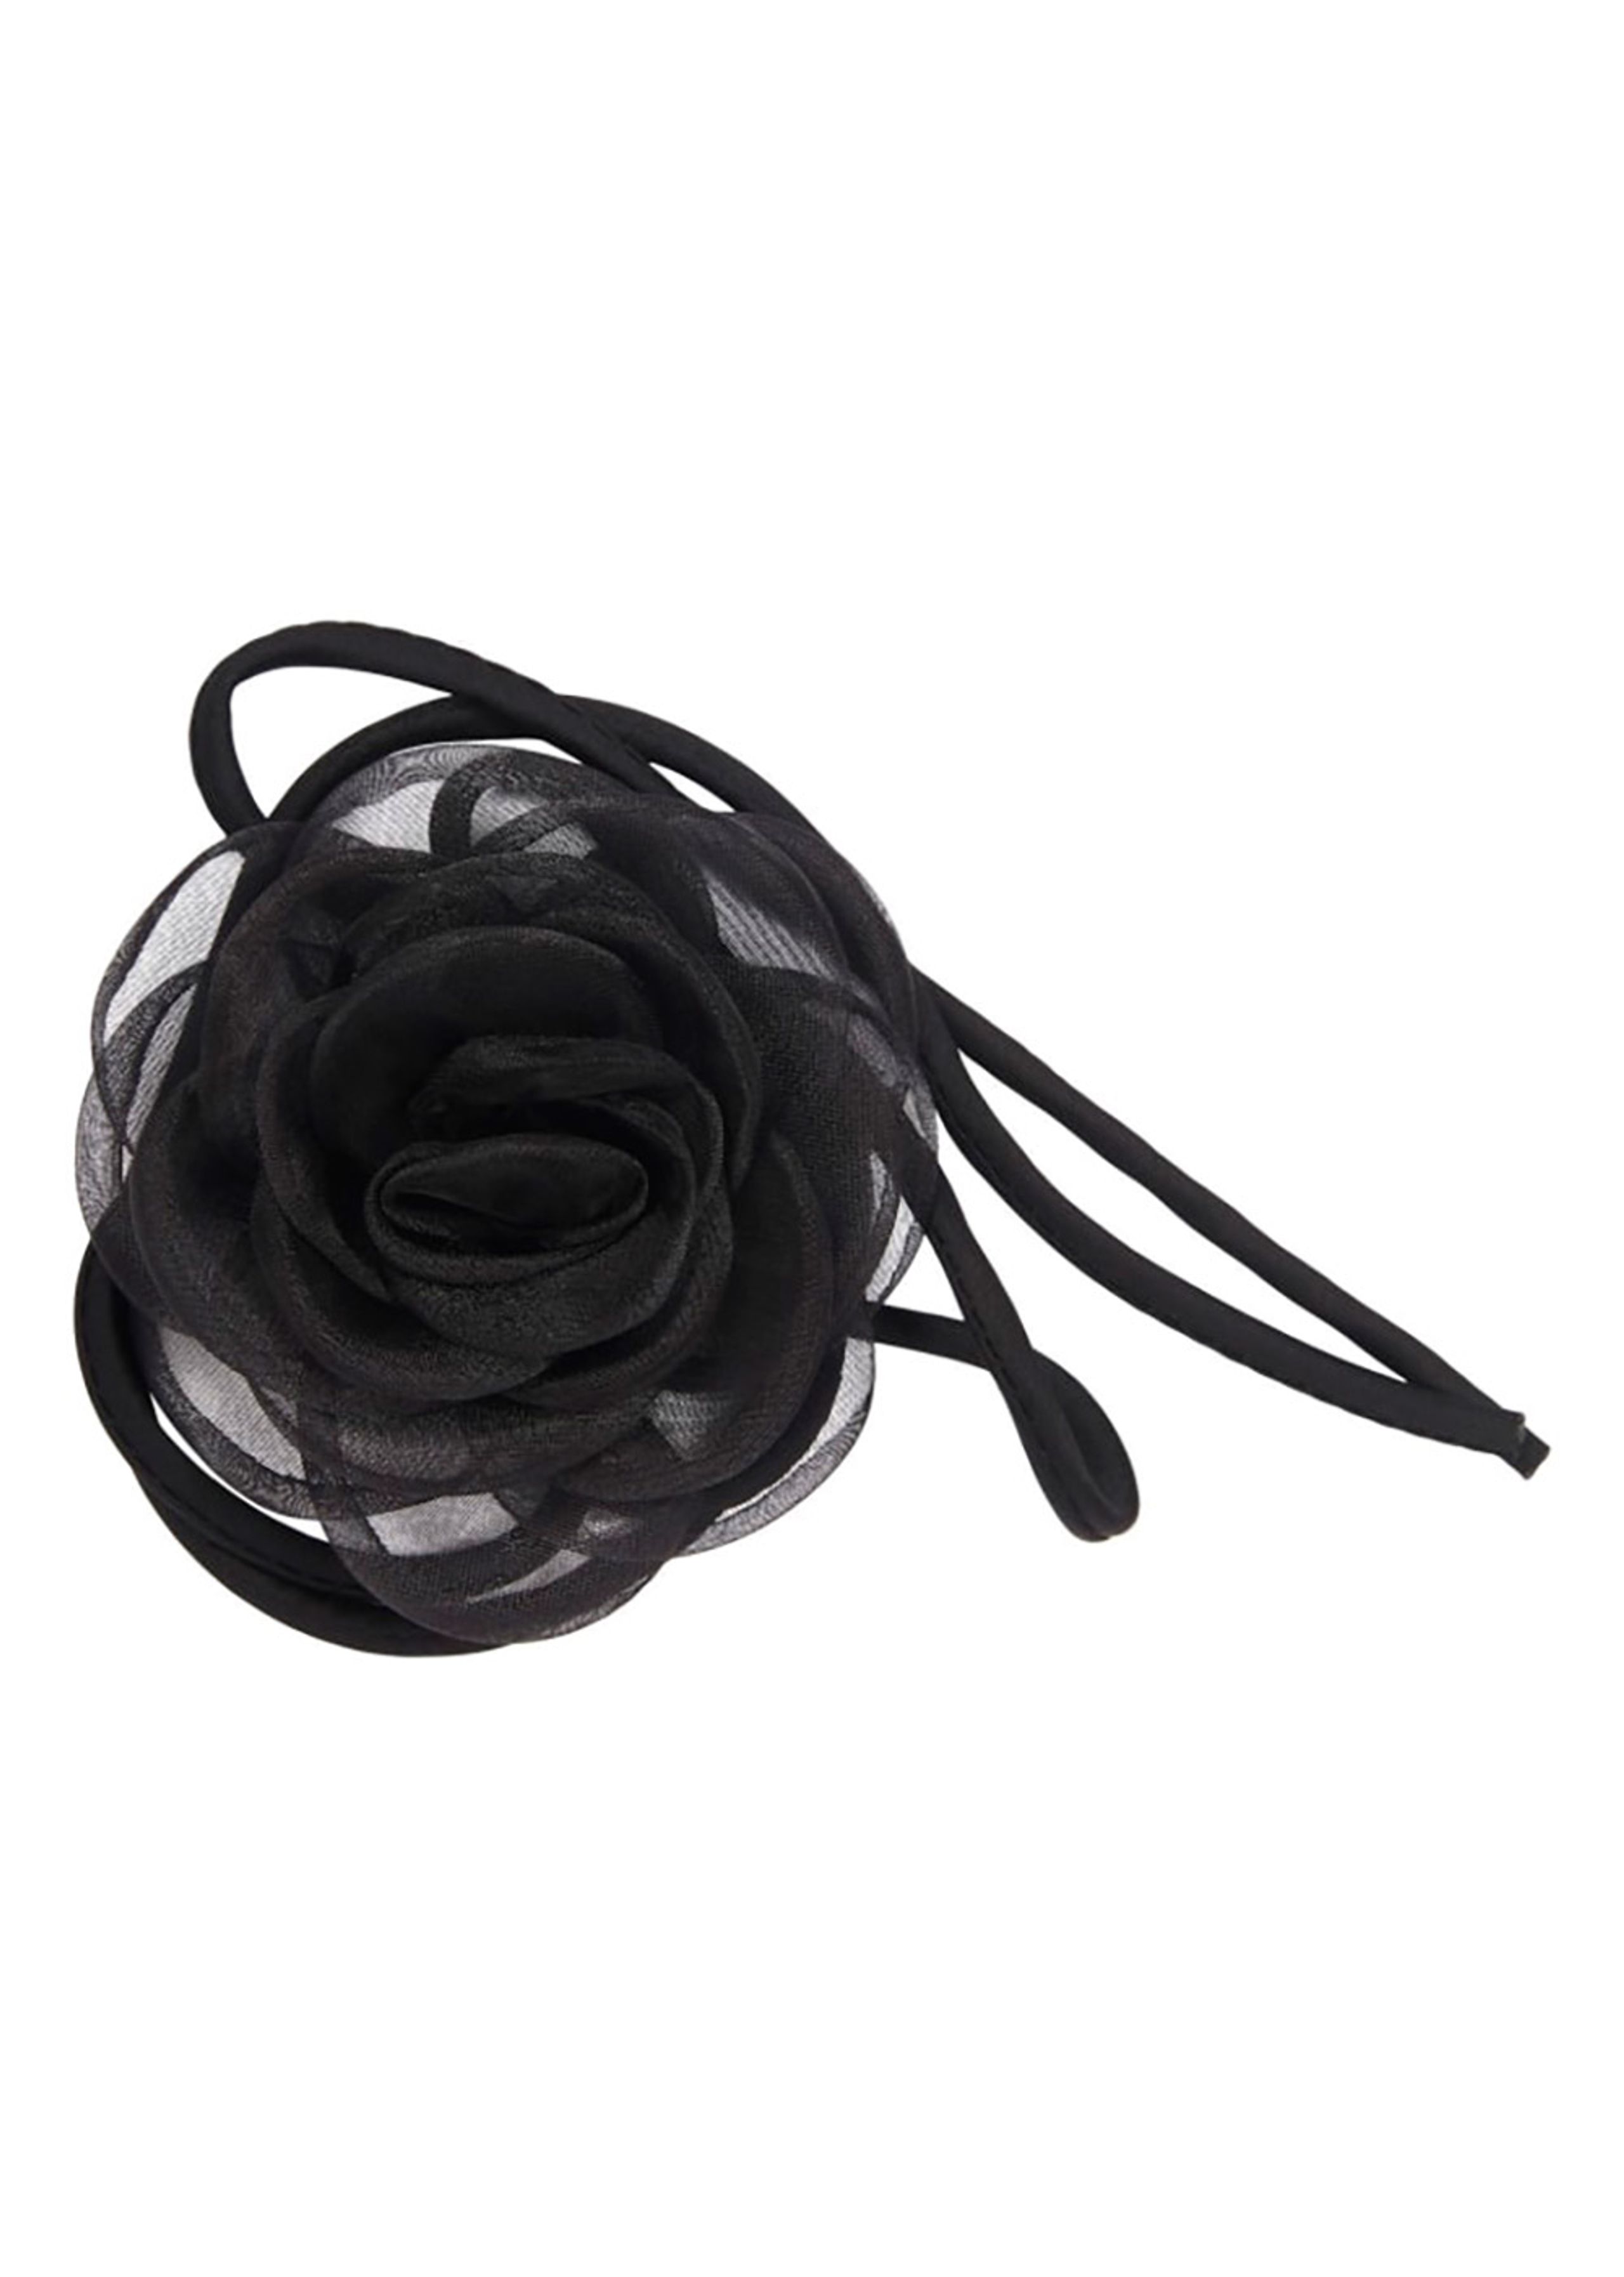 Pico - Colar - Organza Rose String - Black